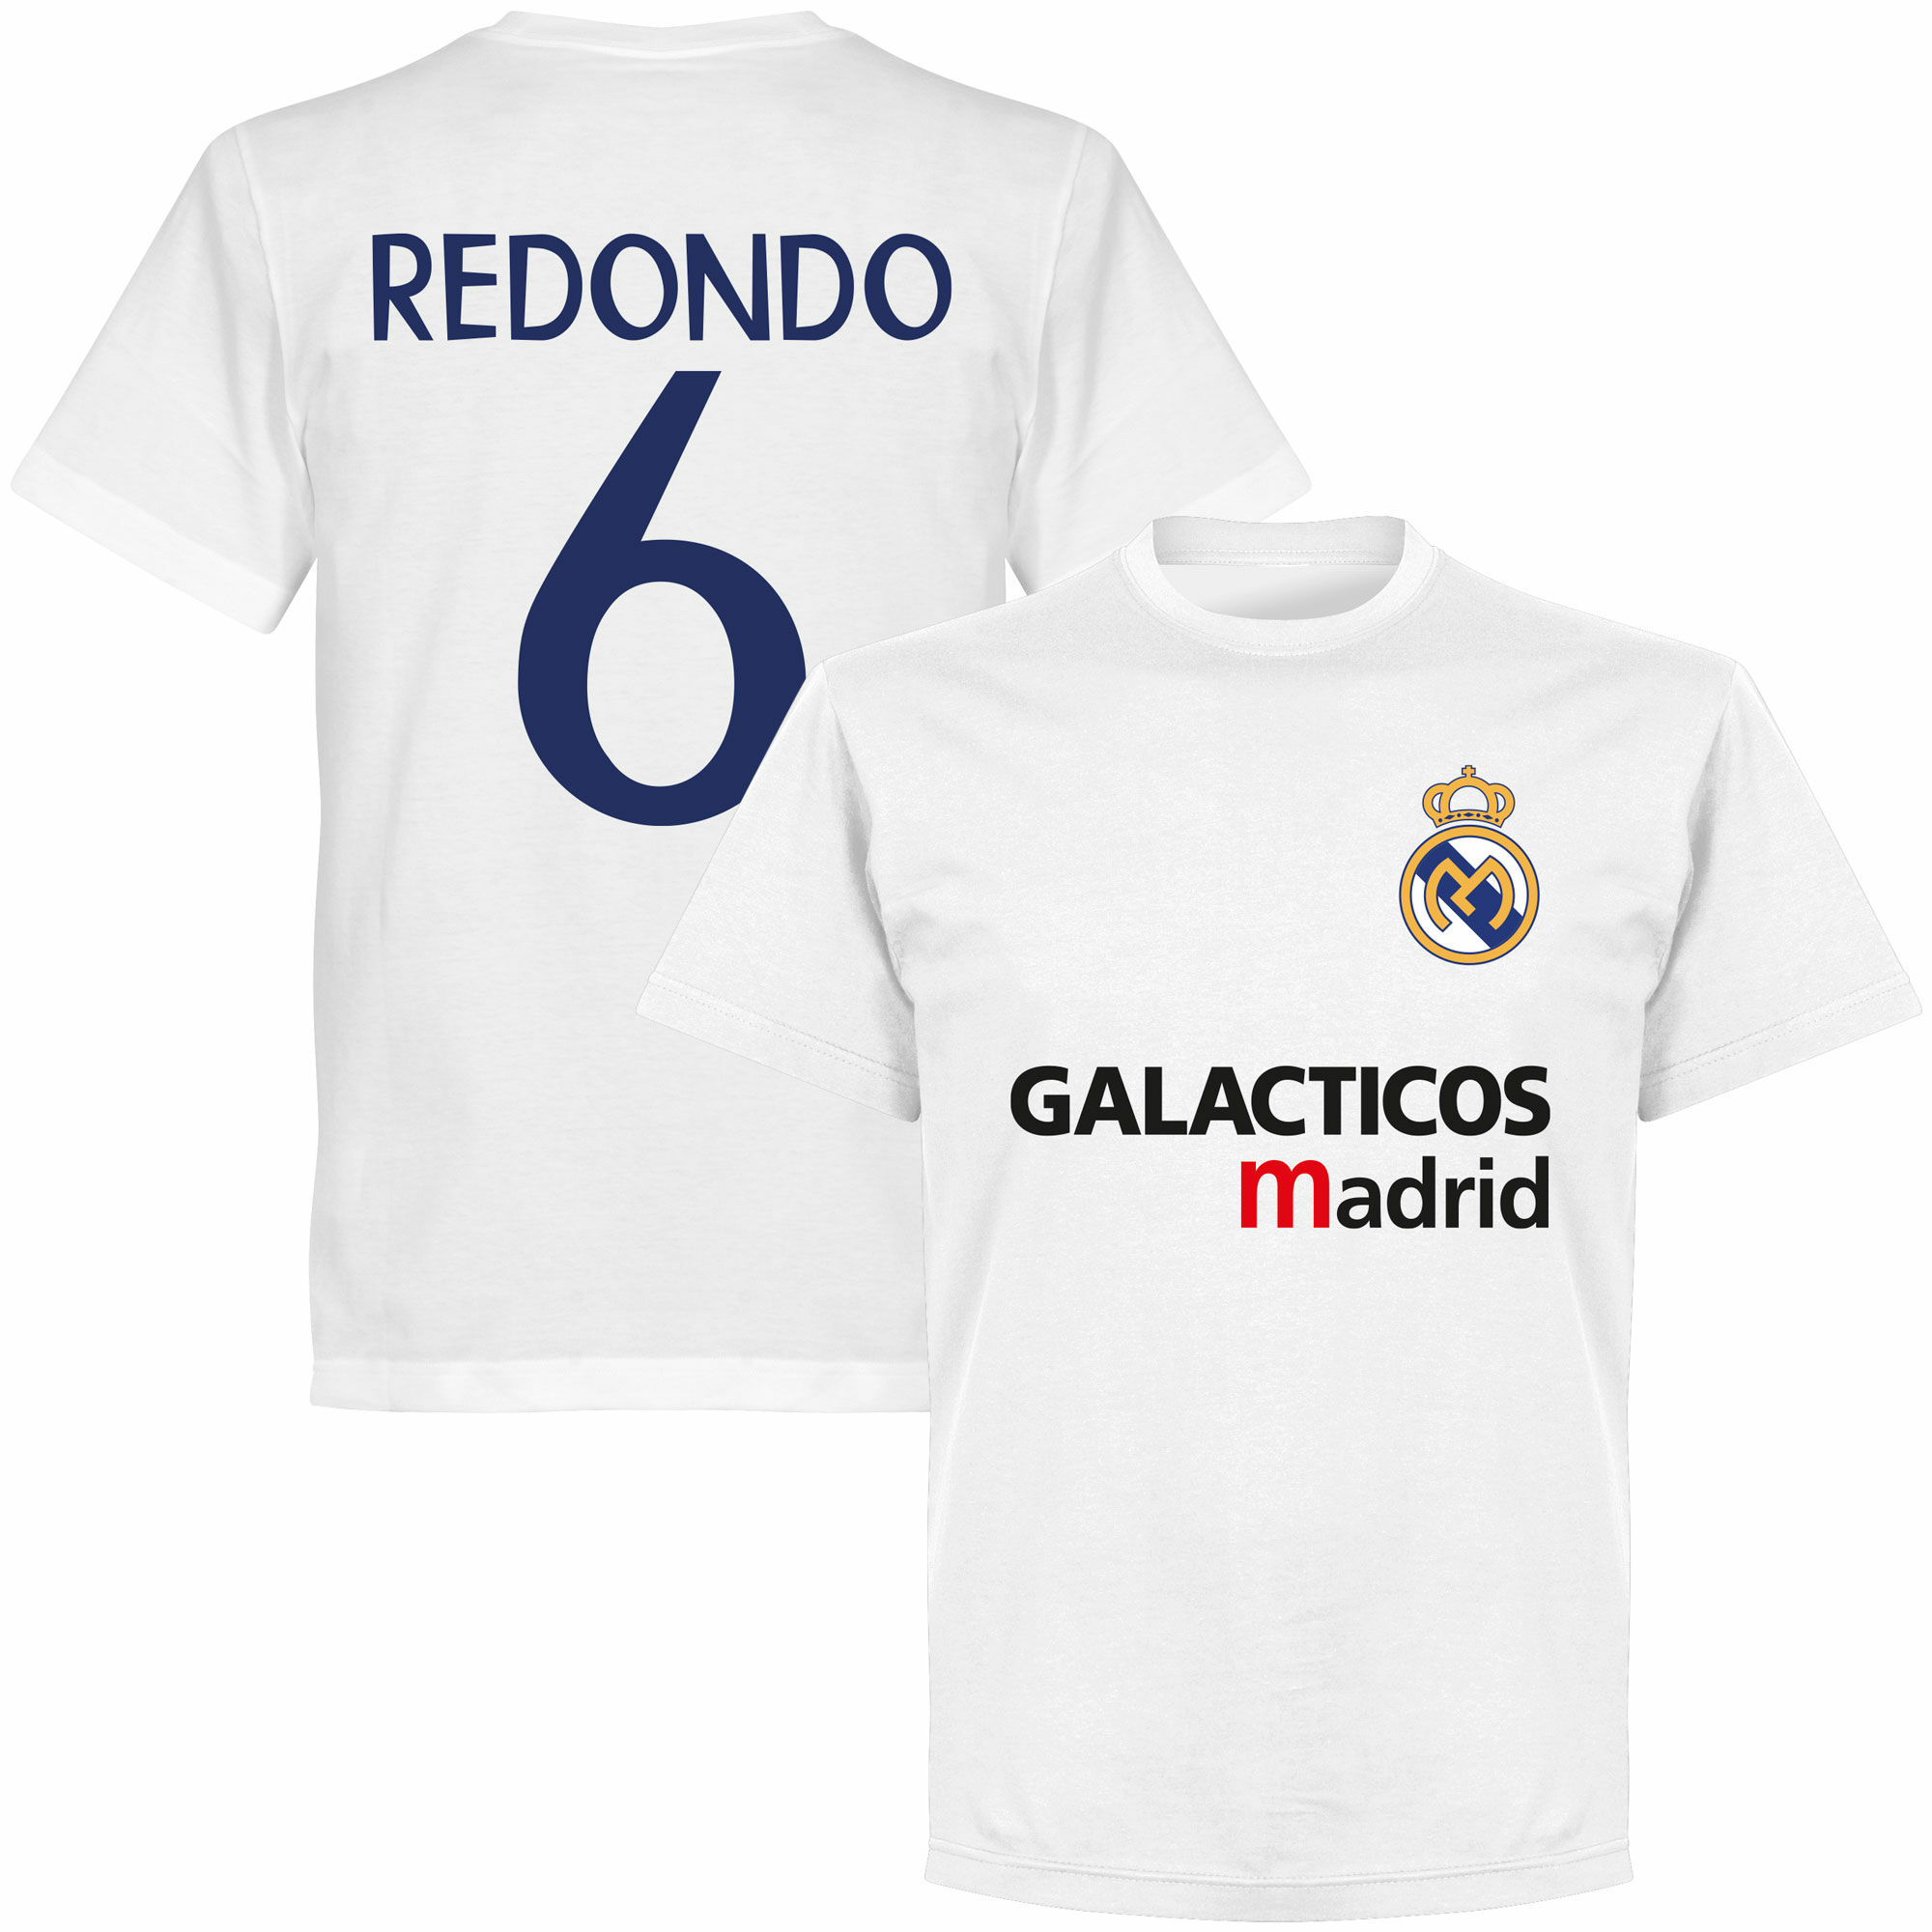 Real Madrid - Tričko "Galácticos Madrid" - bílé, Fernando Redondo, číslo 6